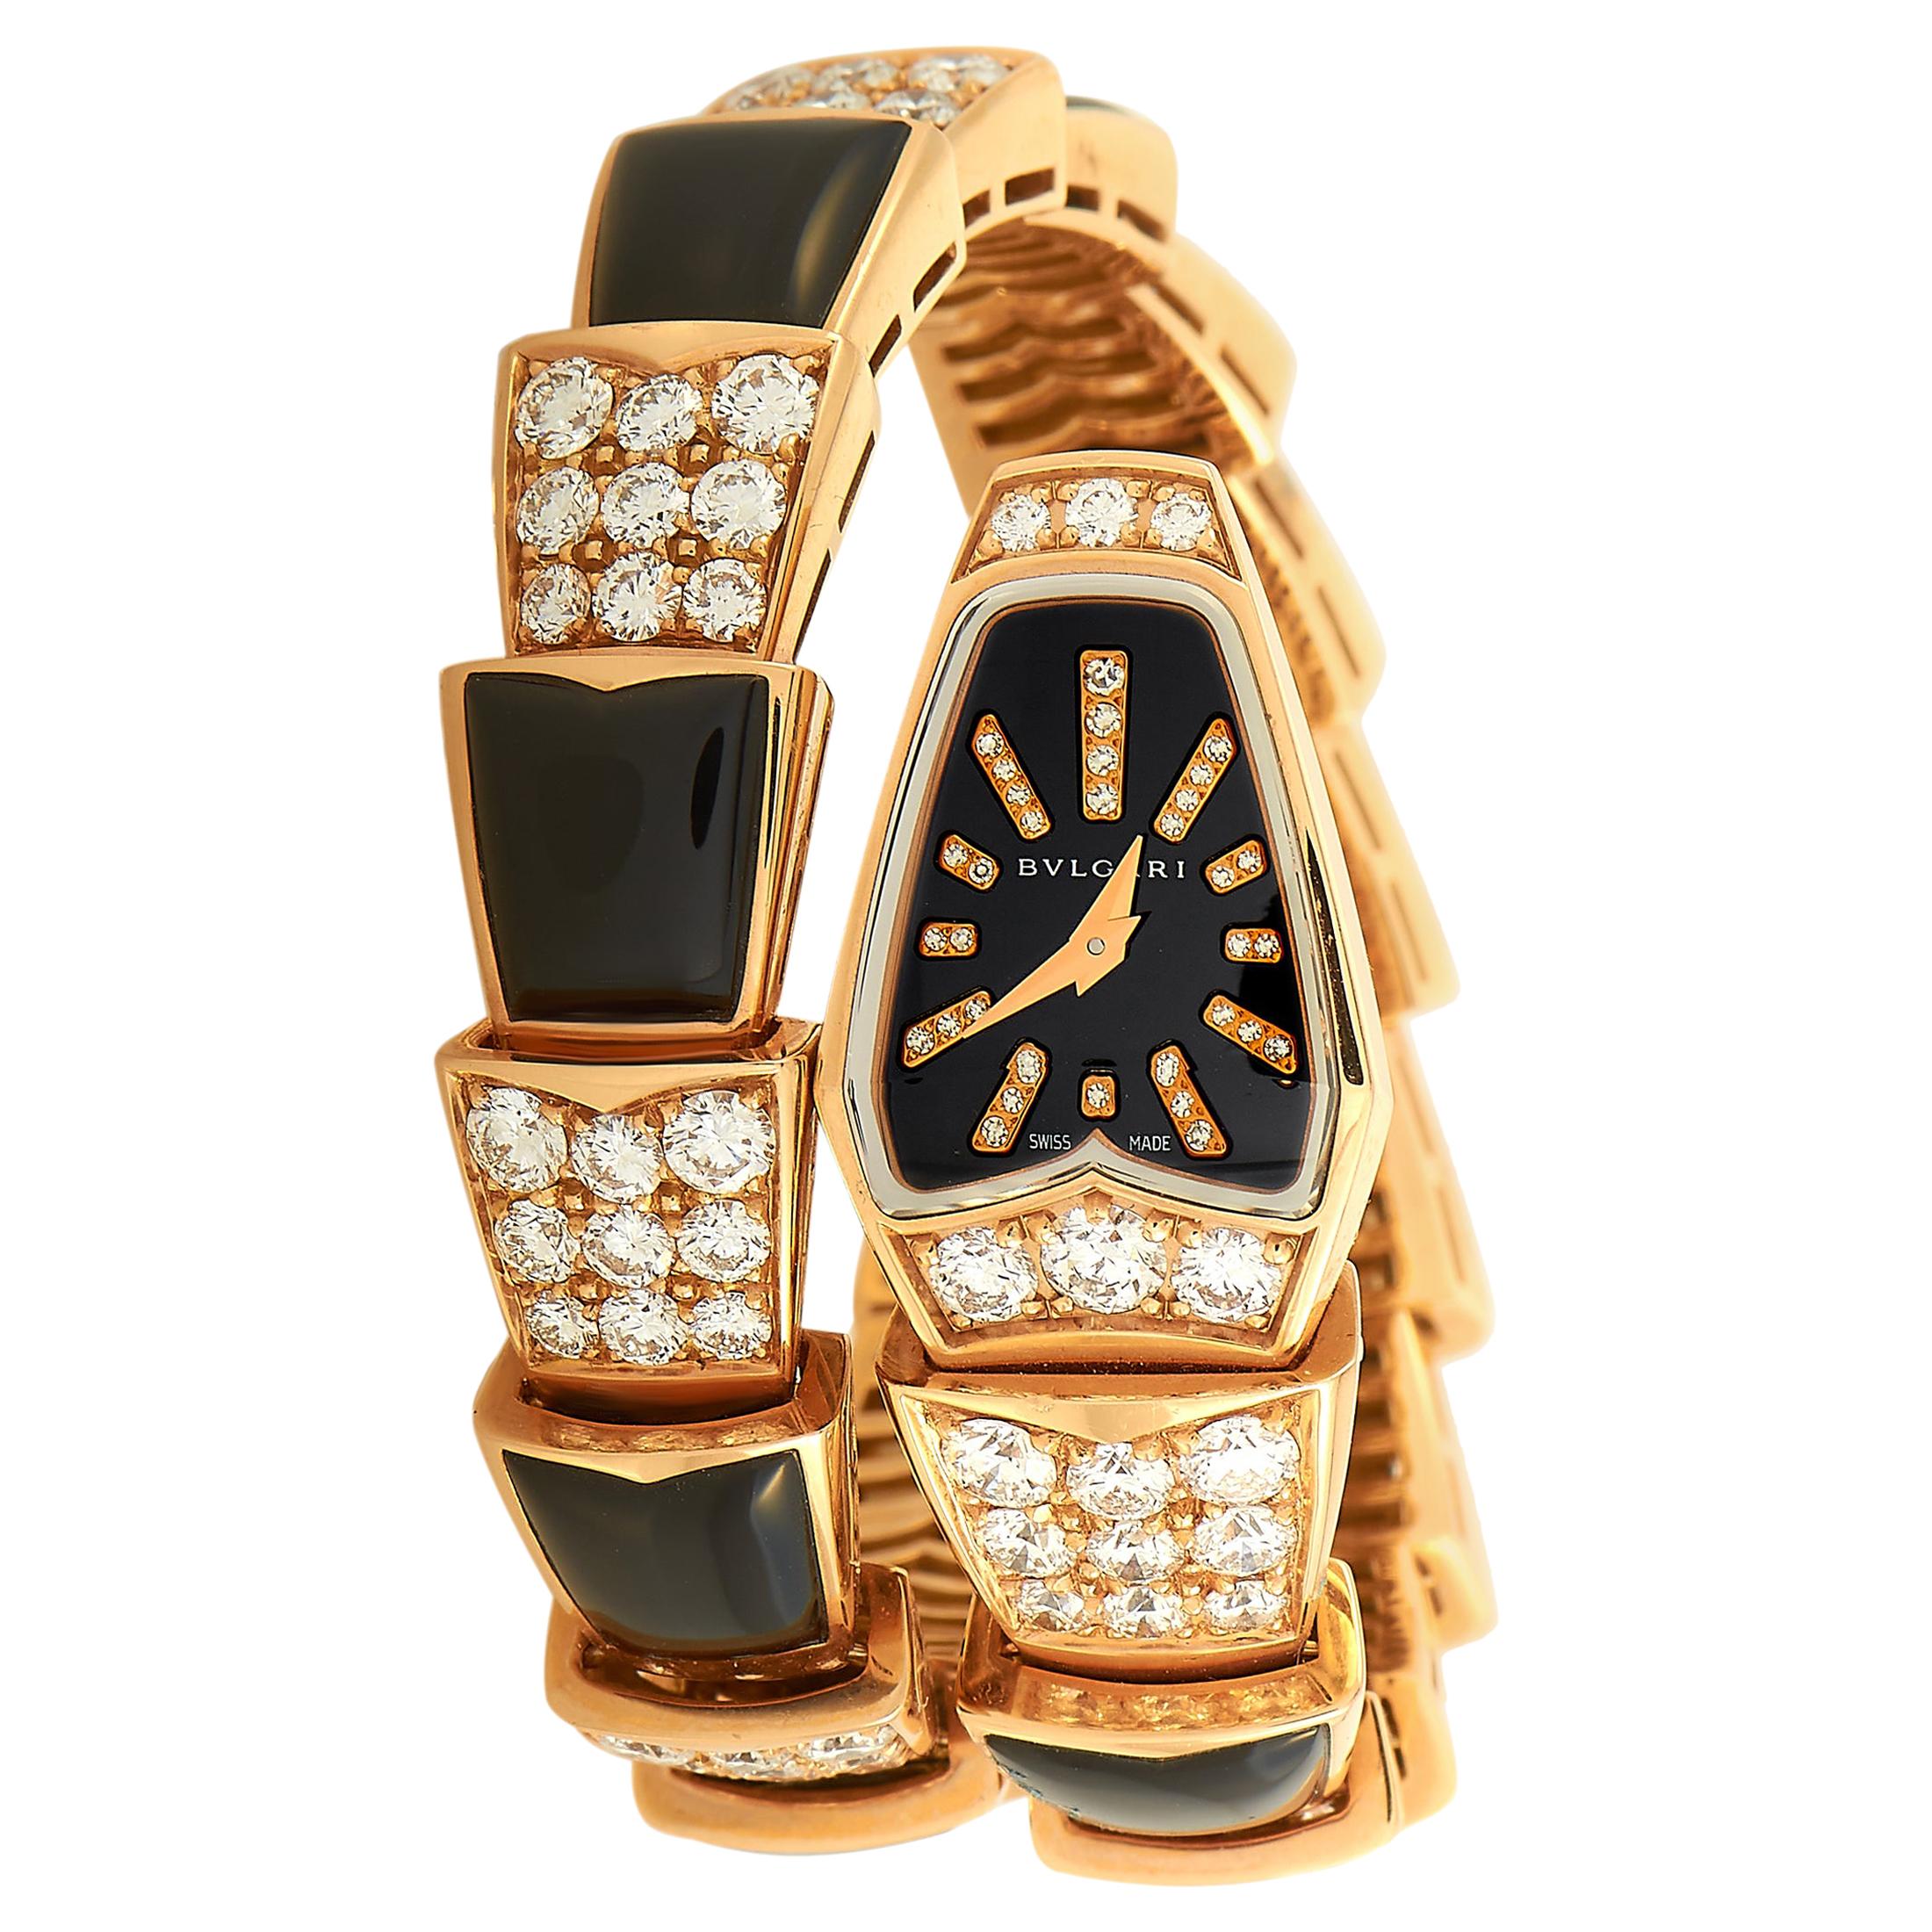 Bvlgari Serpenti Jewelry Watch 101790